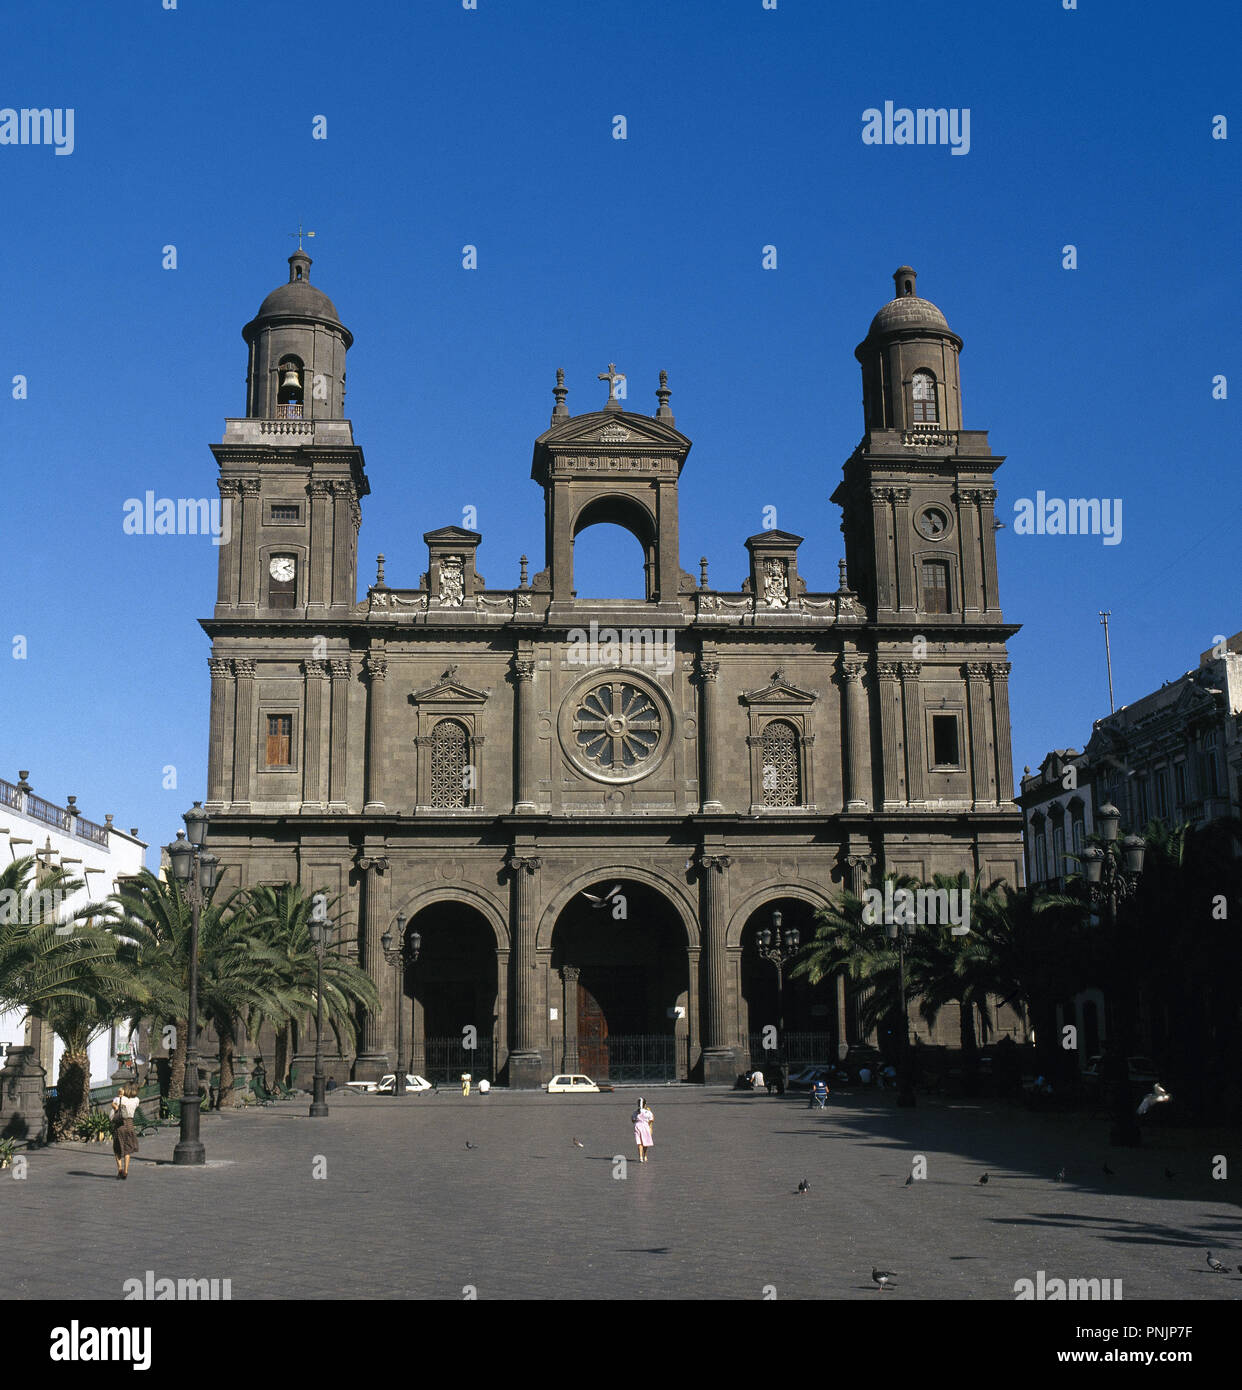 Spanien. Kanarischen Inseln. Las Palmas de Gran Canaria. Die Santa Ana Kathedrale aus dem 16. Jahrhundert. Reformierte zwischen 18. und 19. Jahrhundert. Neoklassizistischen Fassade. Stockfoto